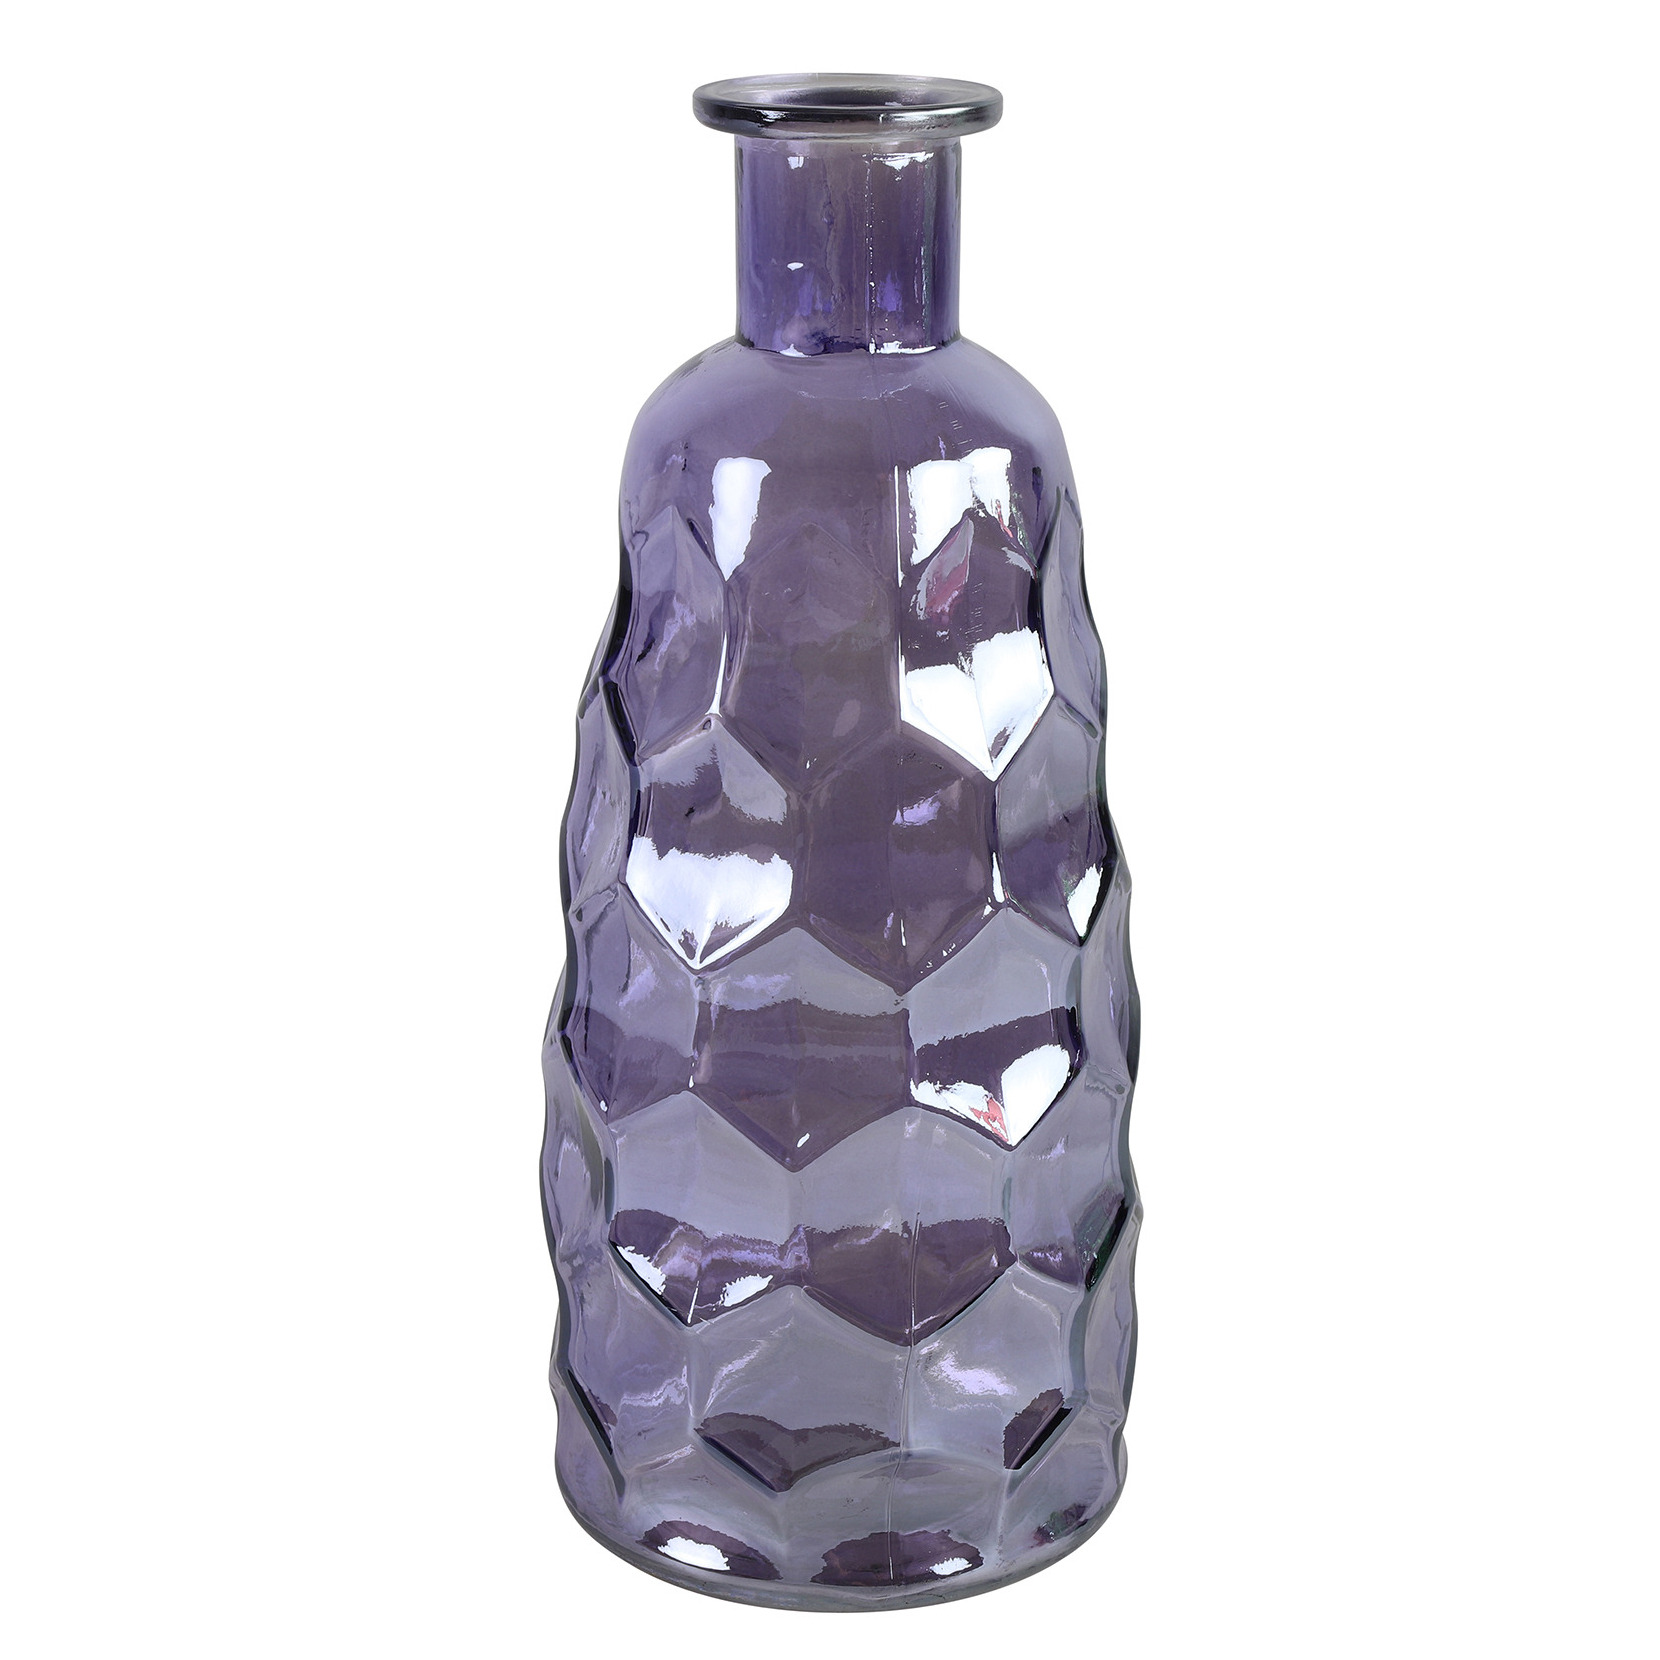 Countryfield Art Deco bloemenvaas - paars transparant - glas - fles vorm - D12 x H30 cm -